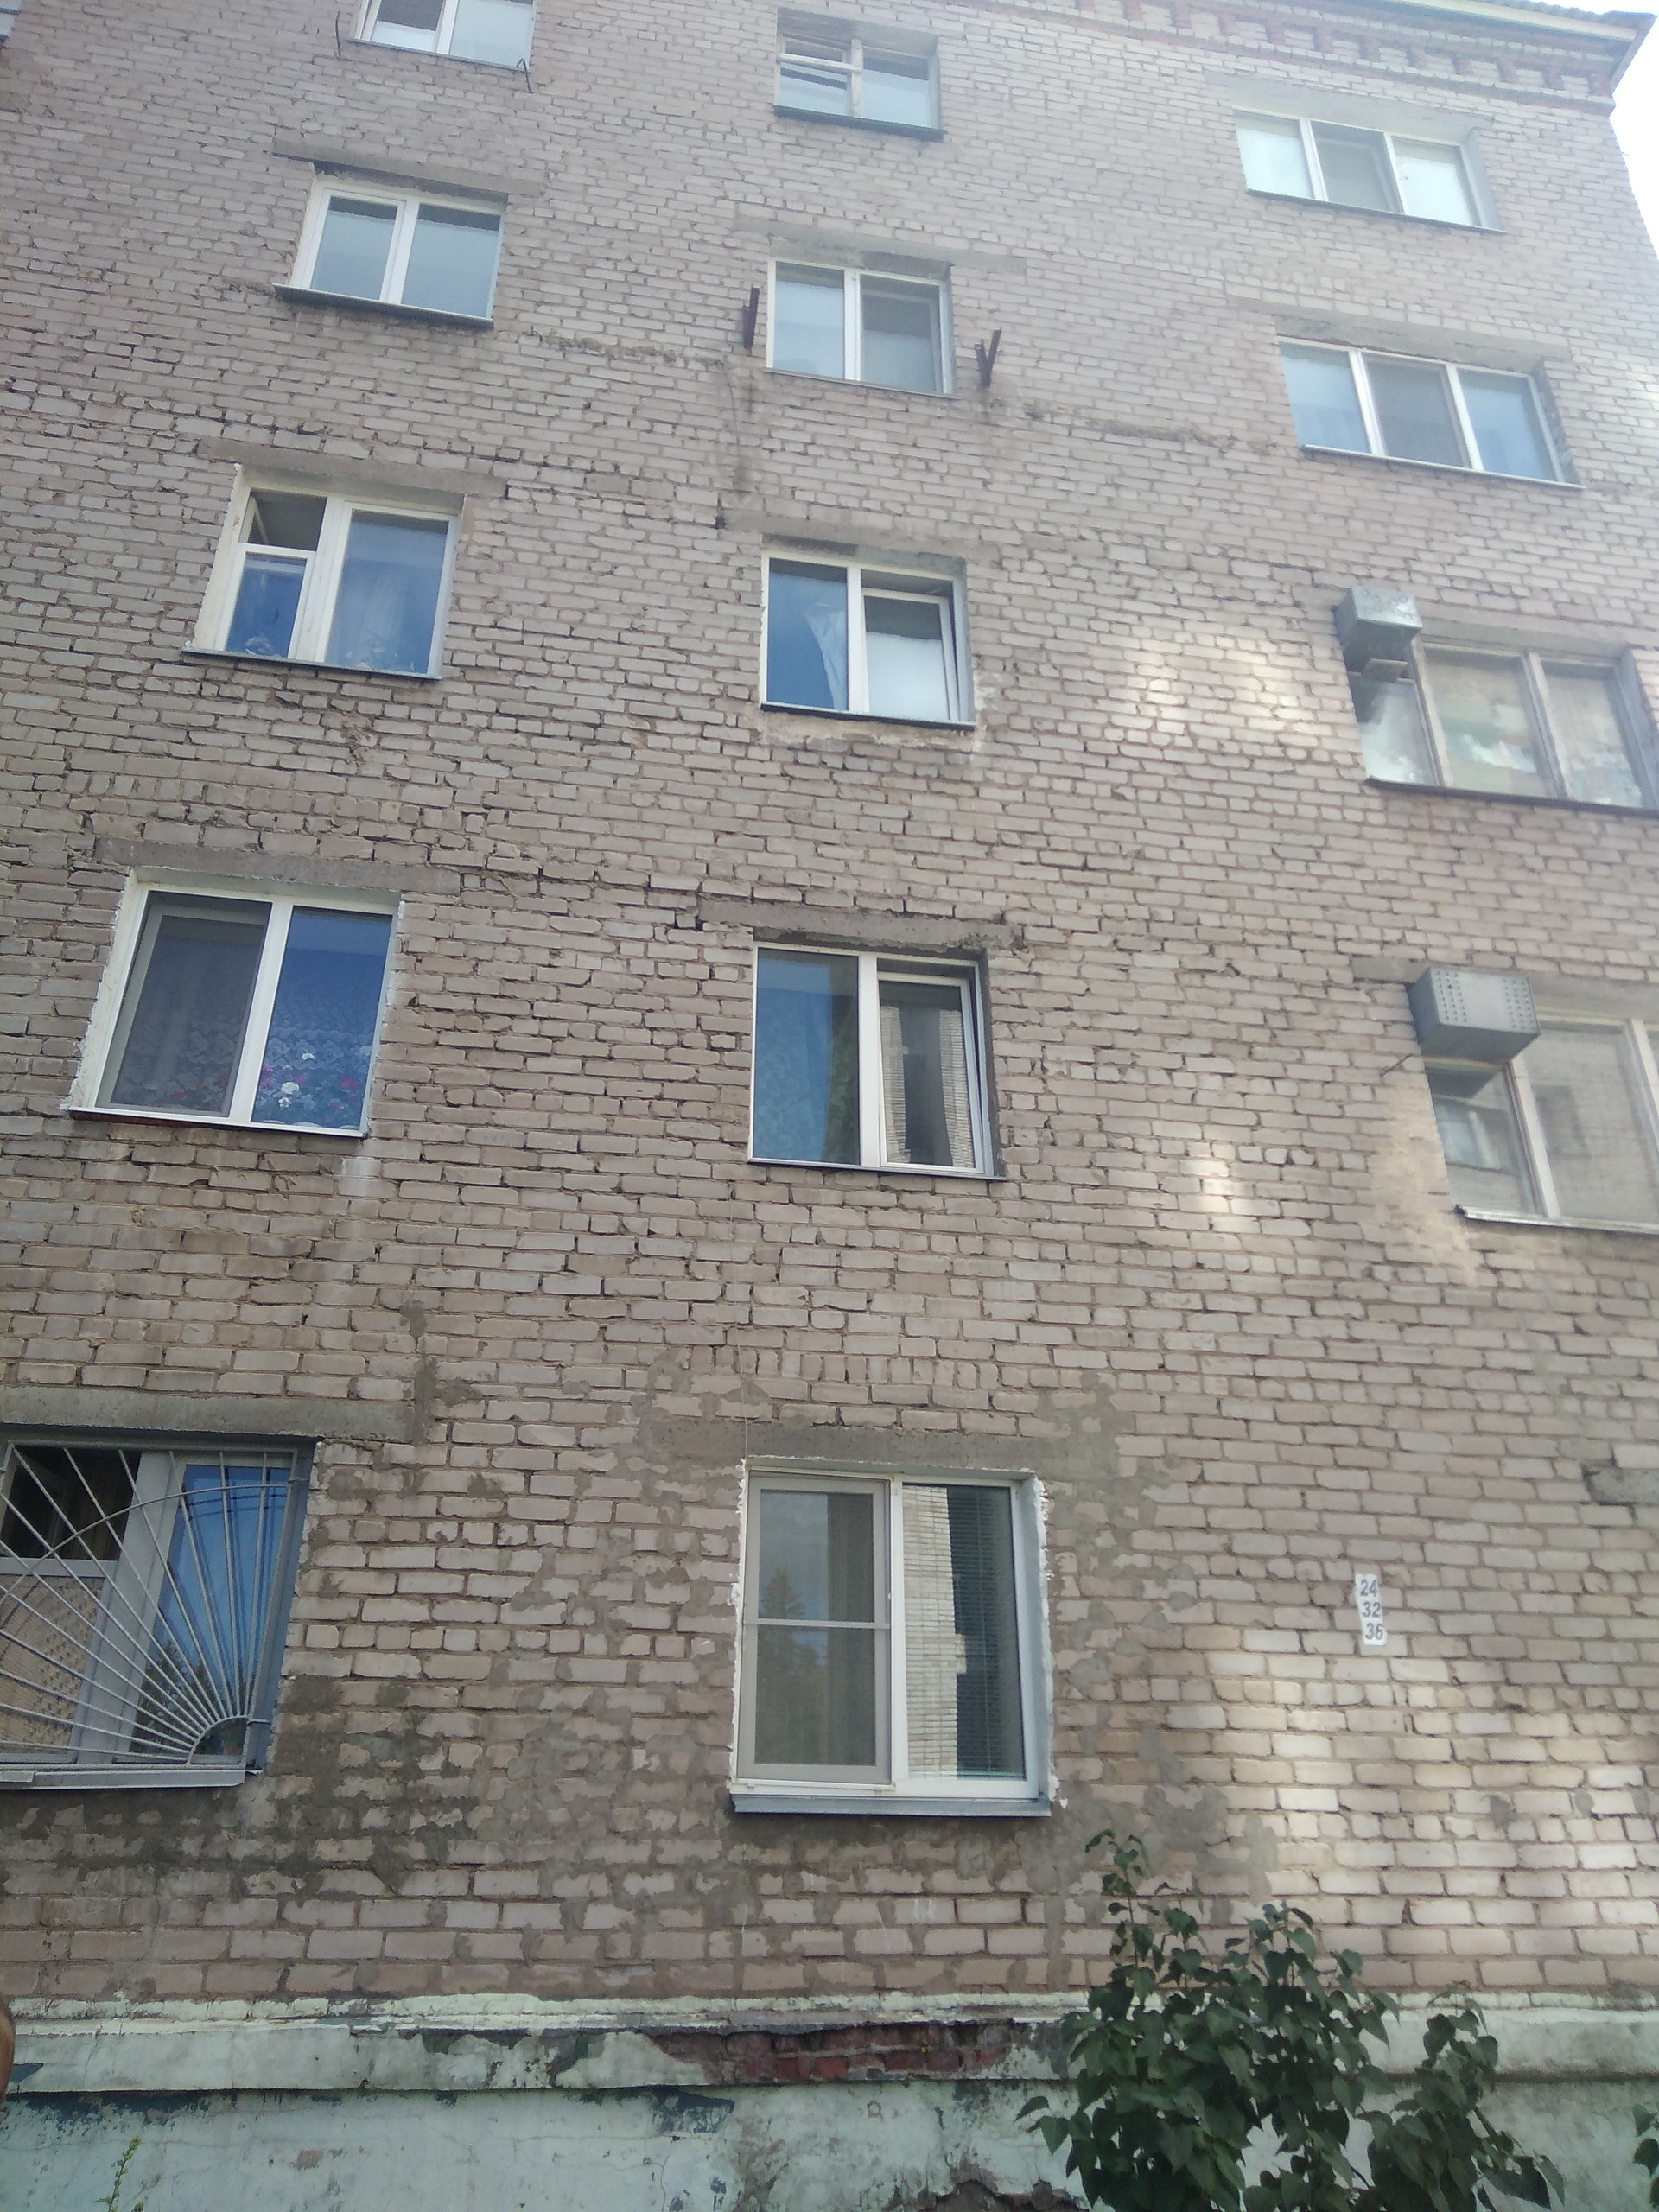 Респ. Удмуртская, г. Ижевск, ул. Буммашевская, д. 32-фасад здания